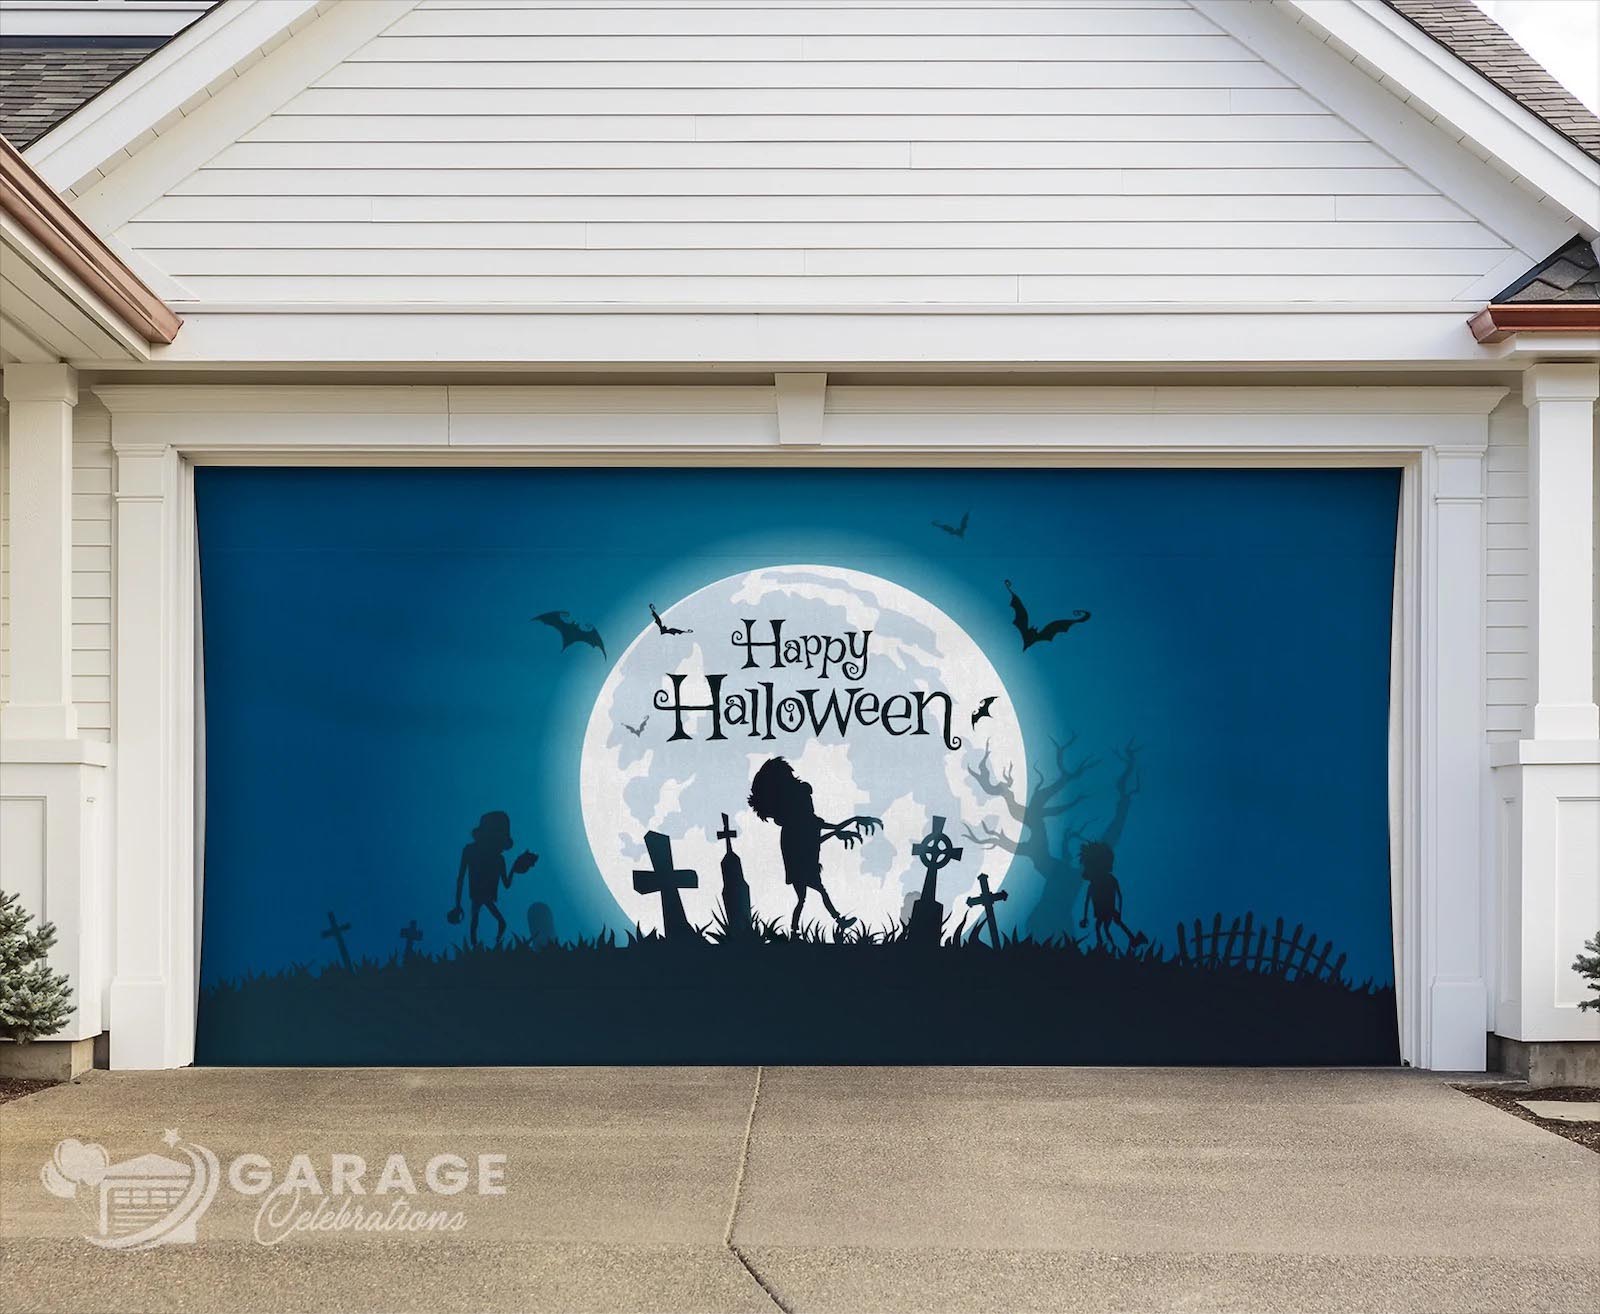 Garage Celebrations Holiday Garage Door Covers Shrk Tank Halloween